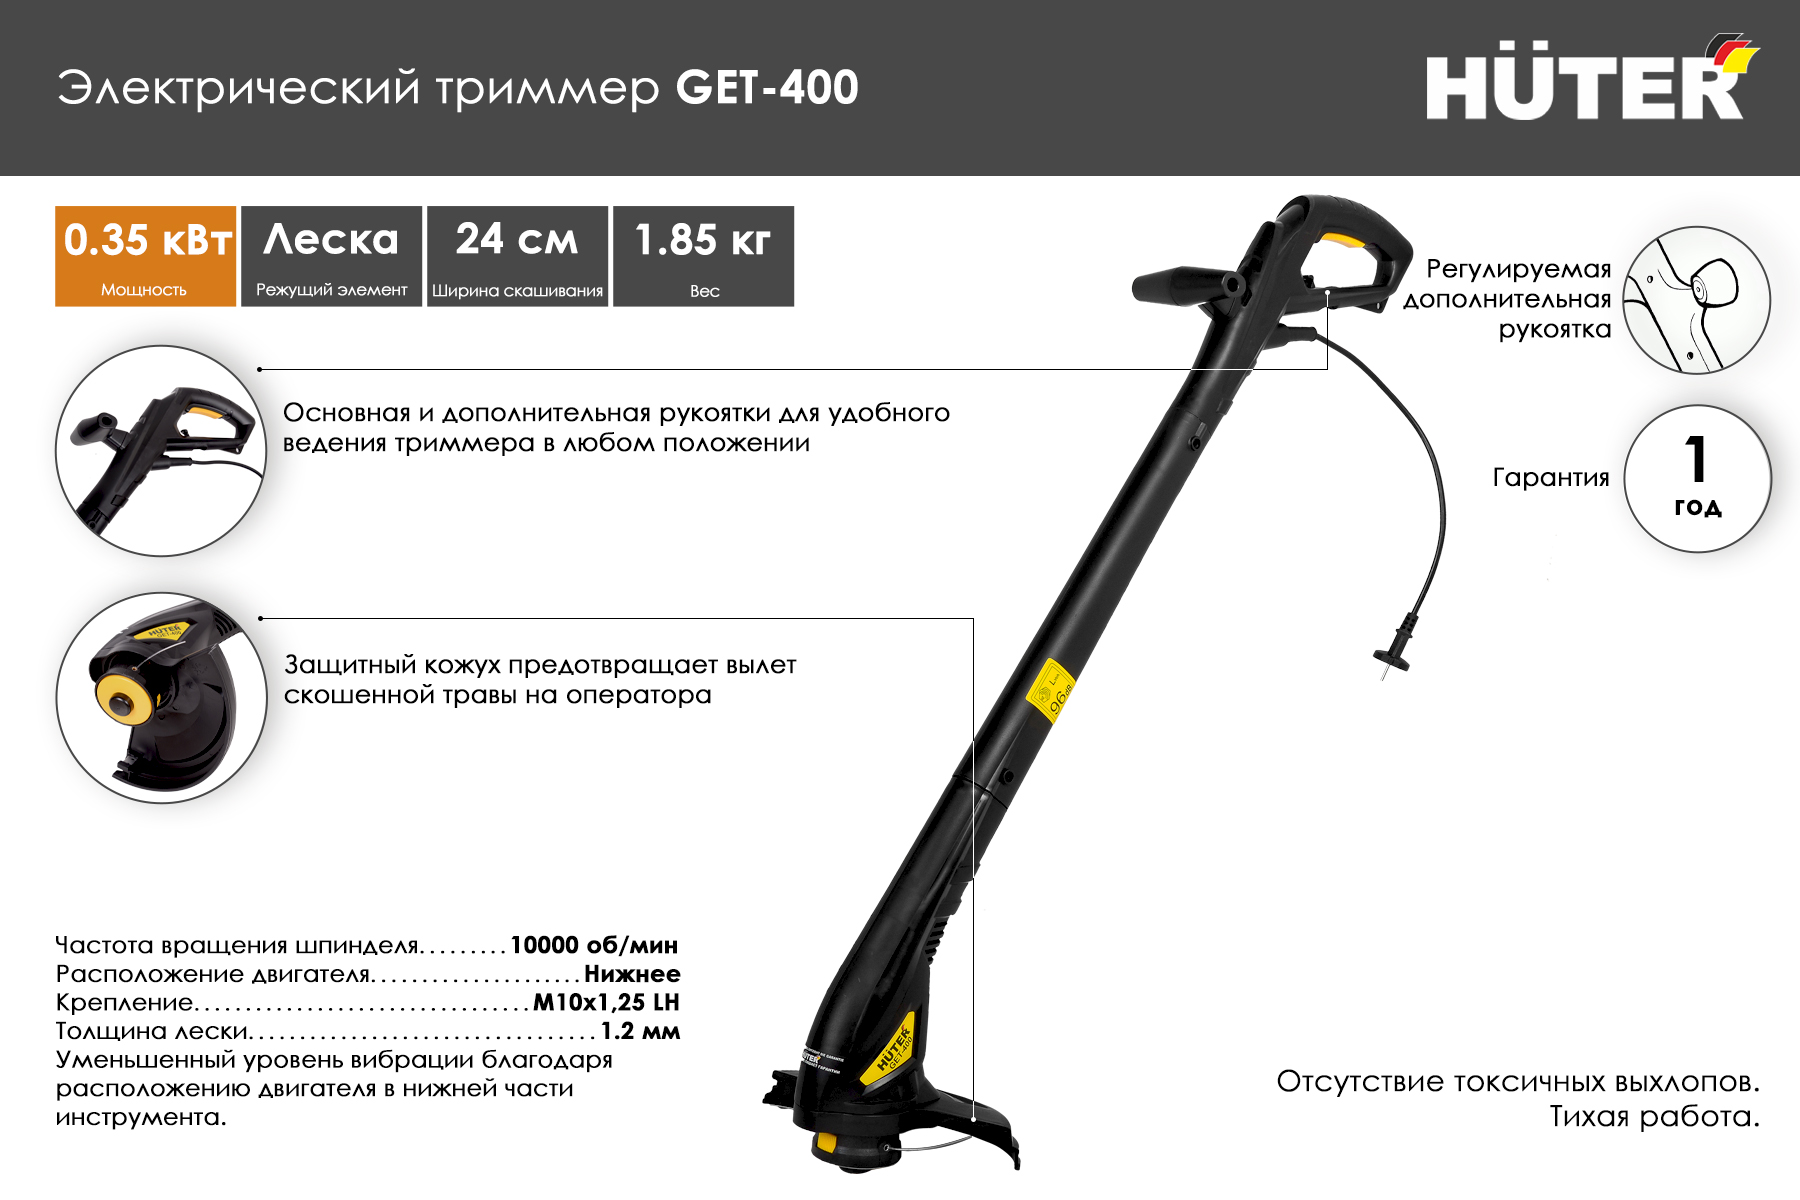 Электрический триммер Huter GET-400